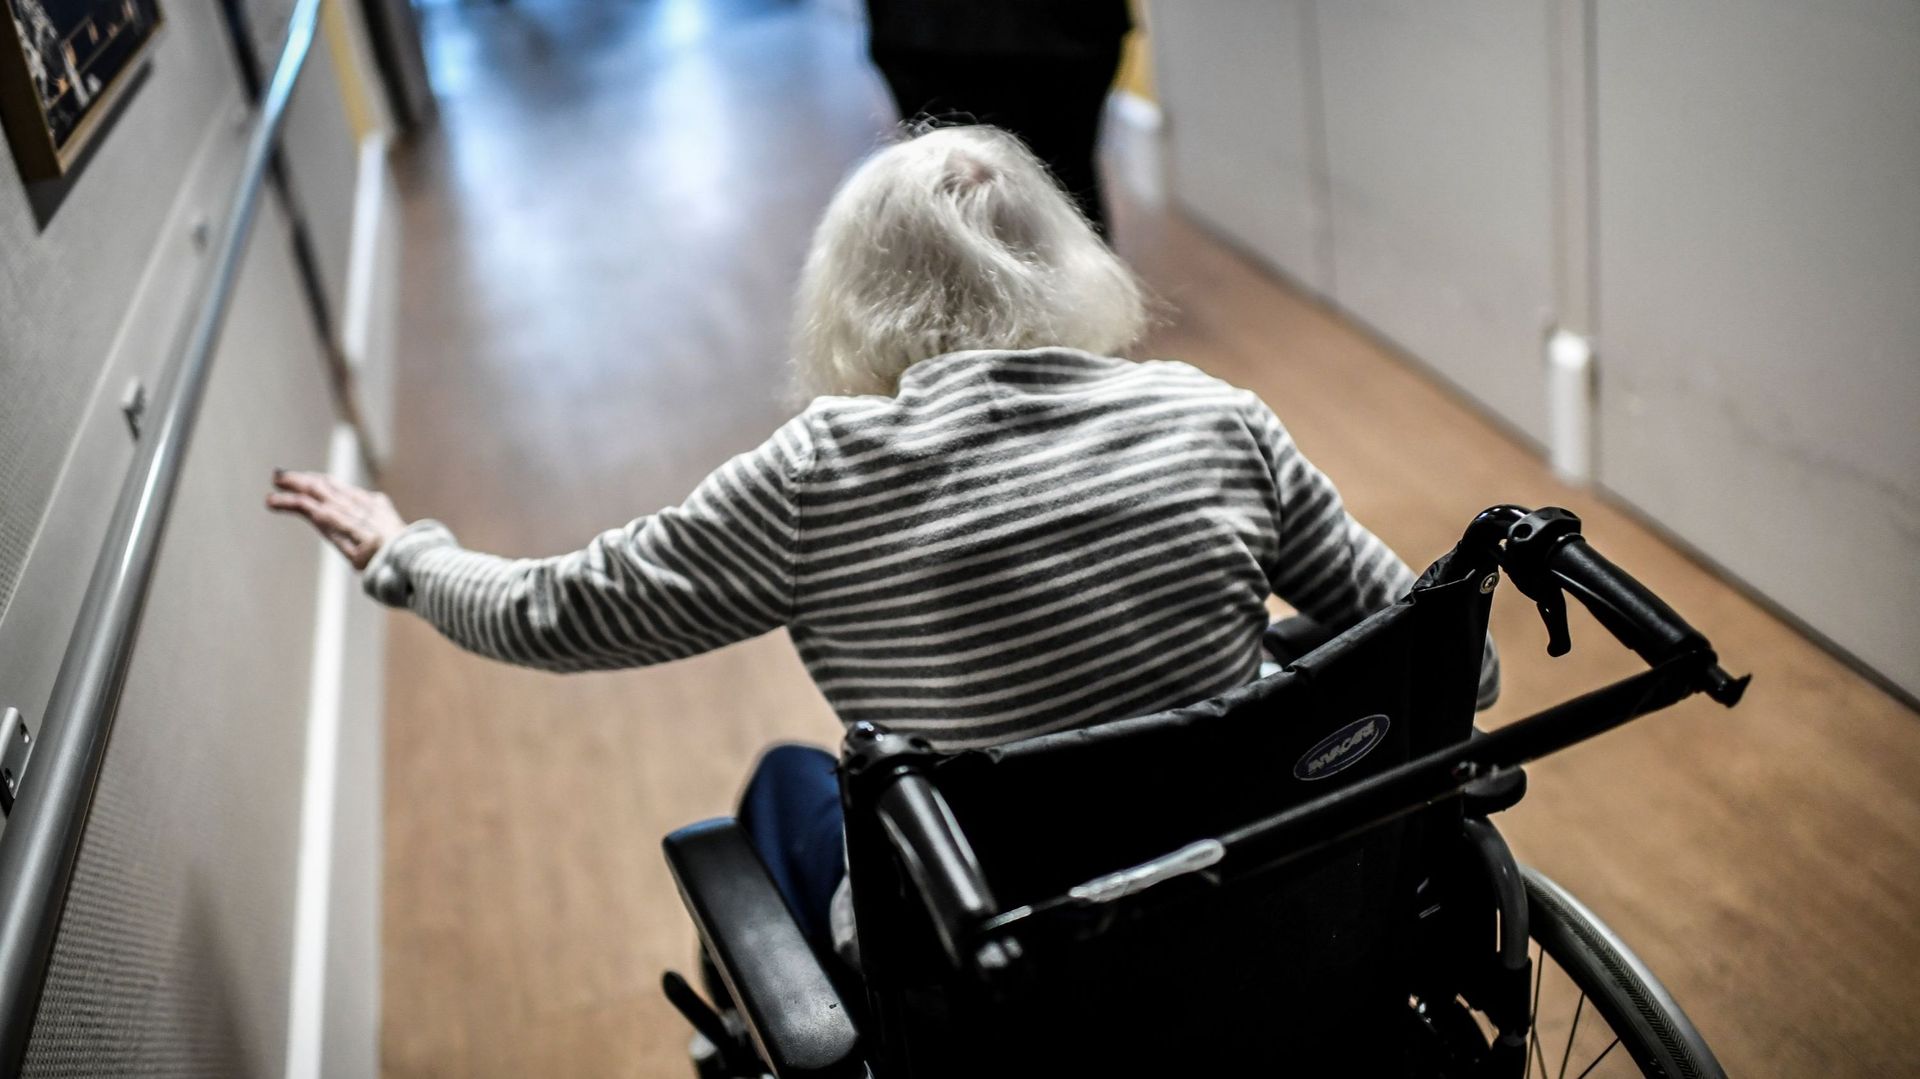 Bruxelles : l’allocation d’aide aux personnes âgées désormais accessible à tous les 65 + indépendamment de leur nationalité